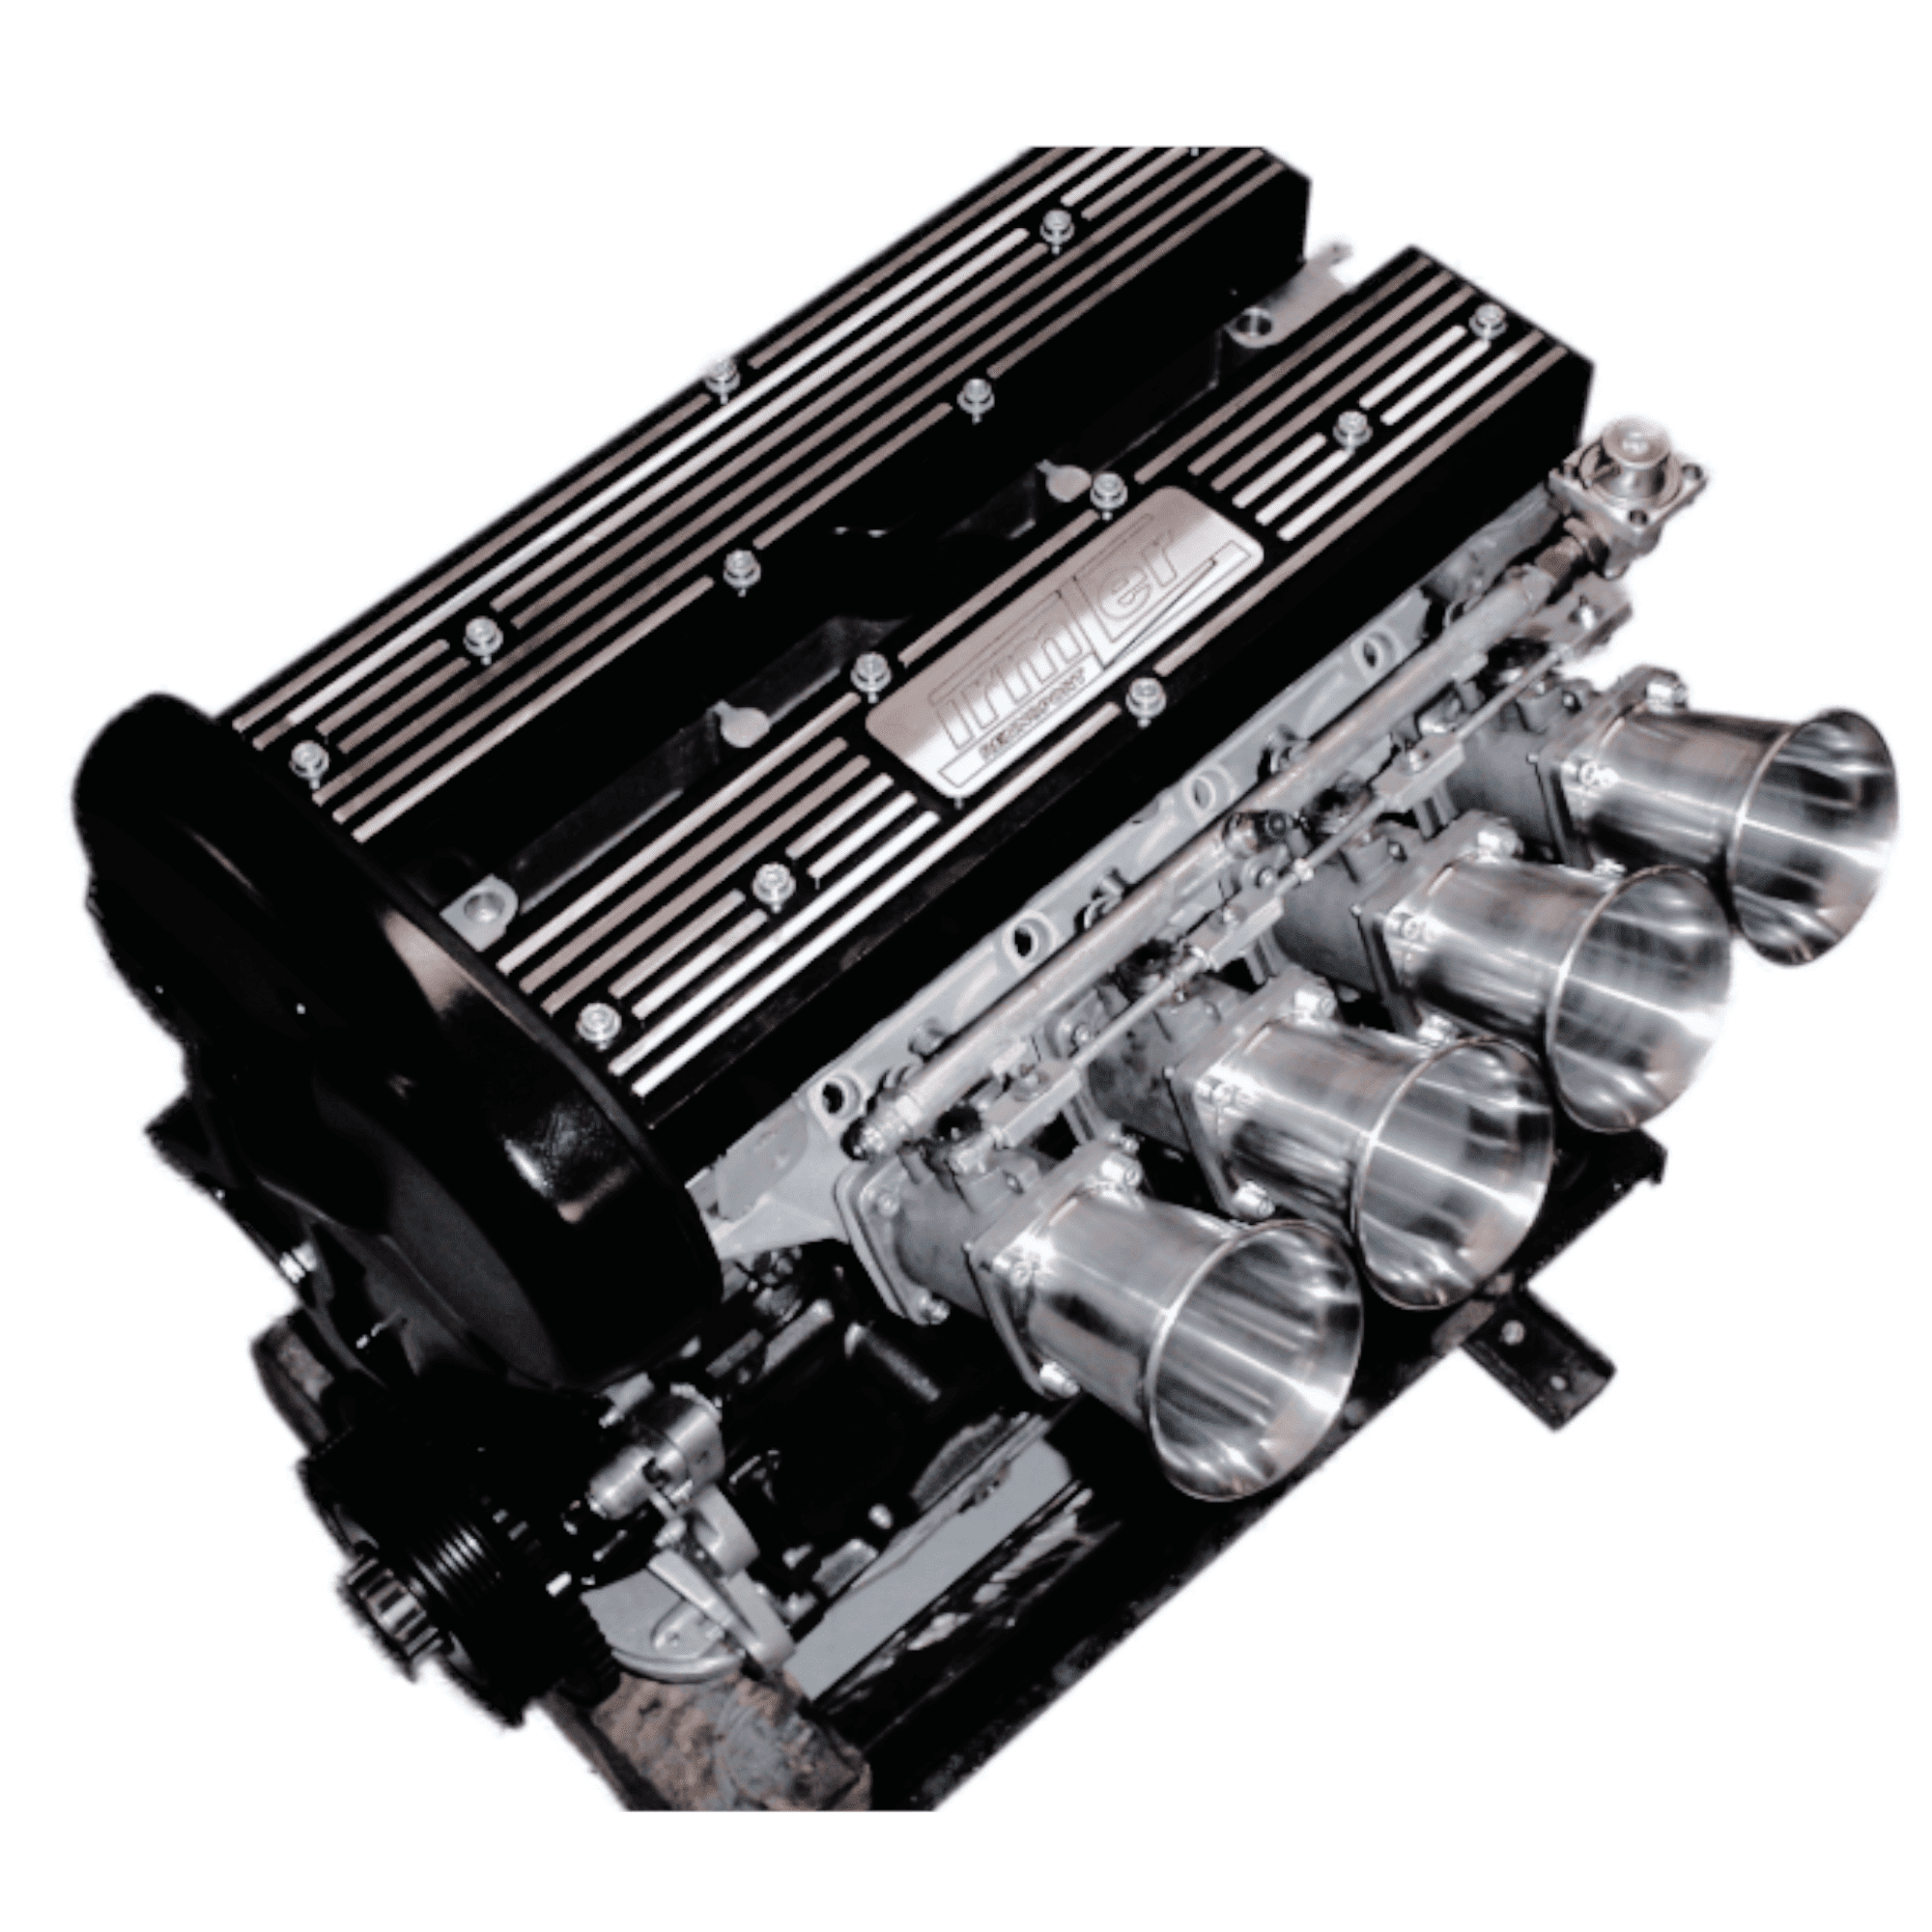 opel-motorteile-fahrzeugteile-ersatzteile-ohc-8-ventil-c20xe-c20let-familie-1-small-block-z20lex-cih-c25xe-bis-z32se-motore-teile-motorsport-tuning